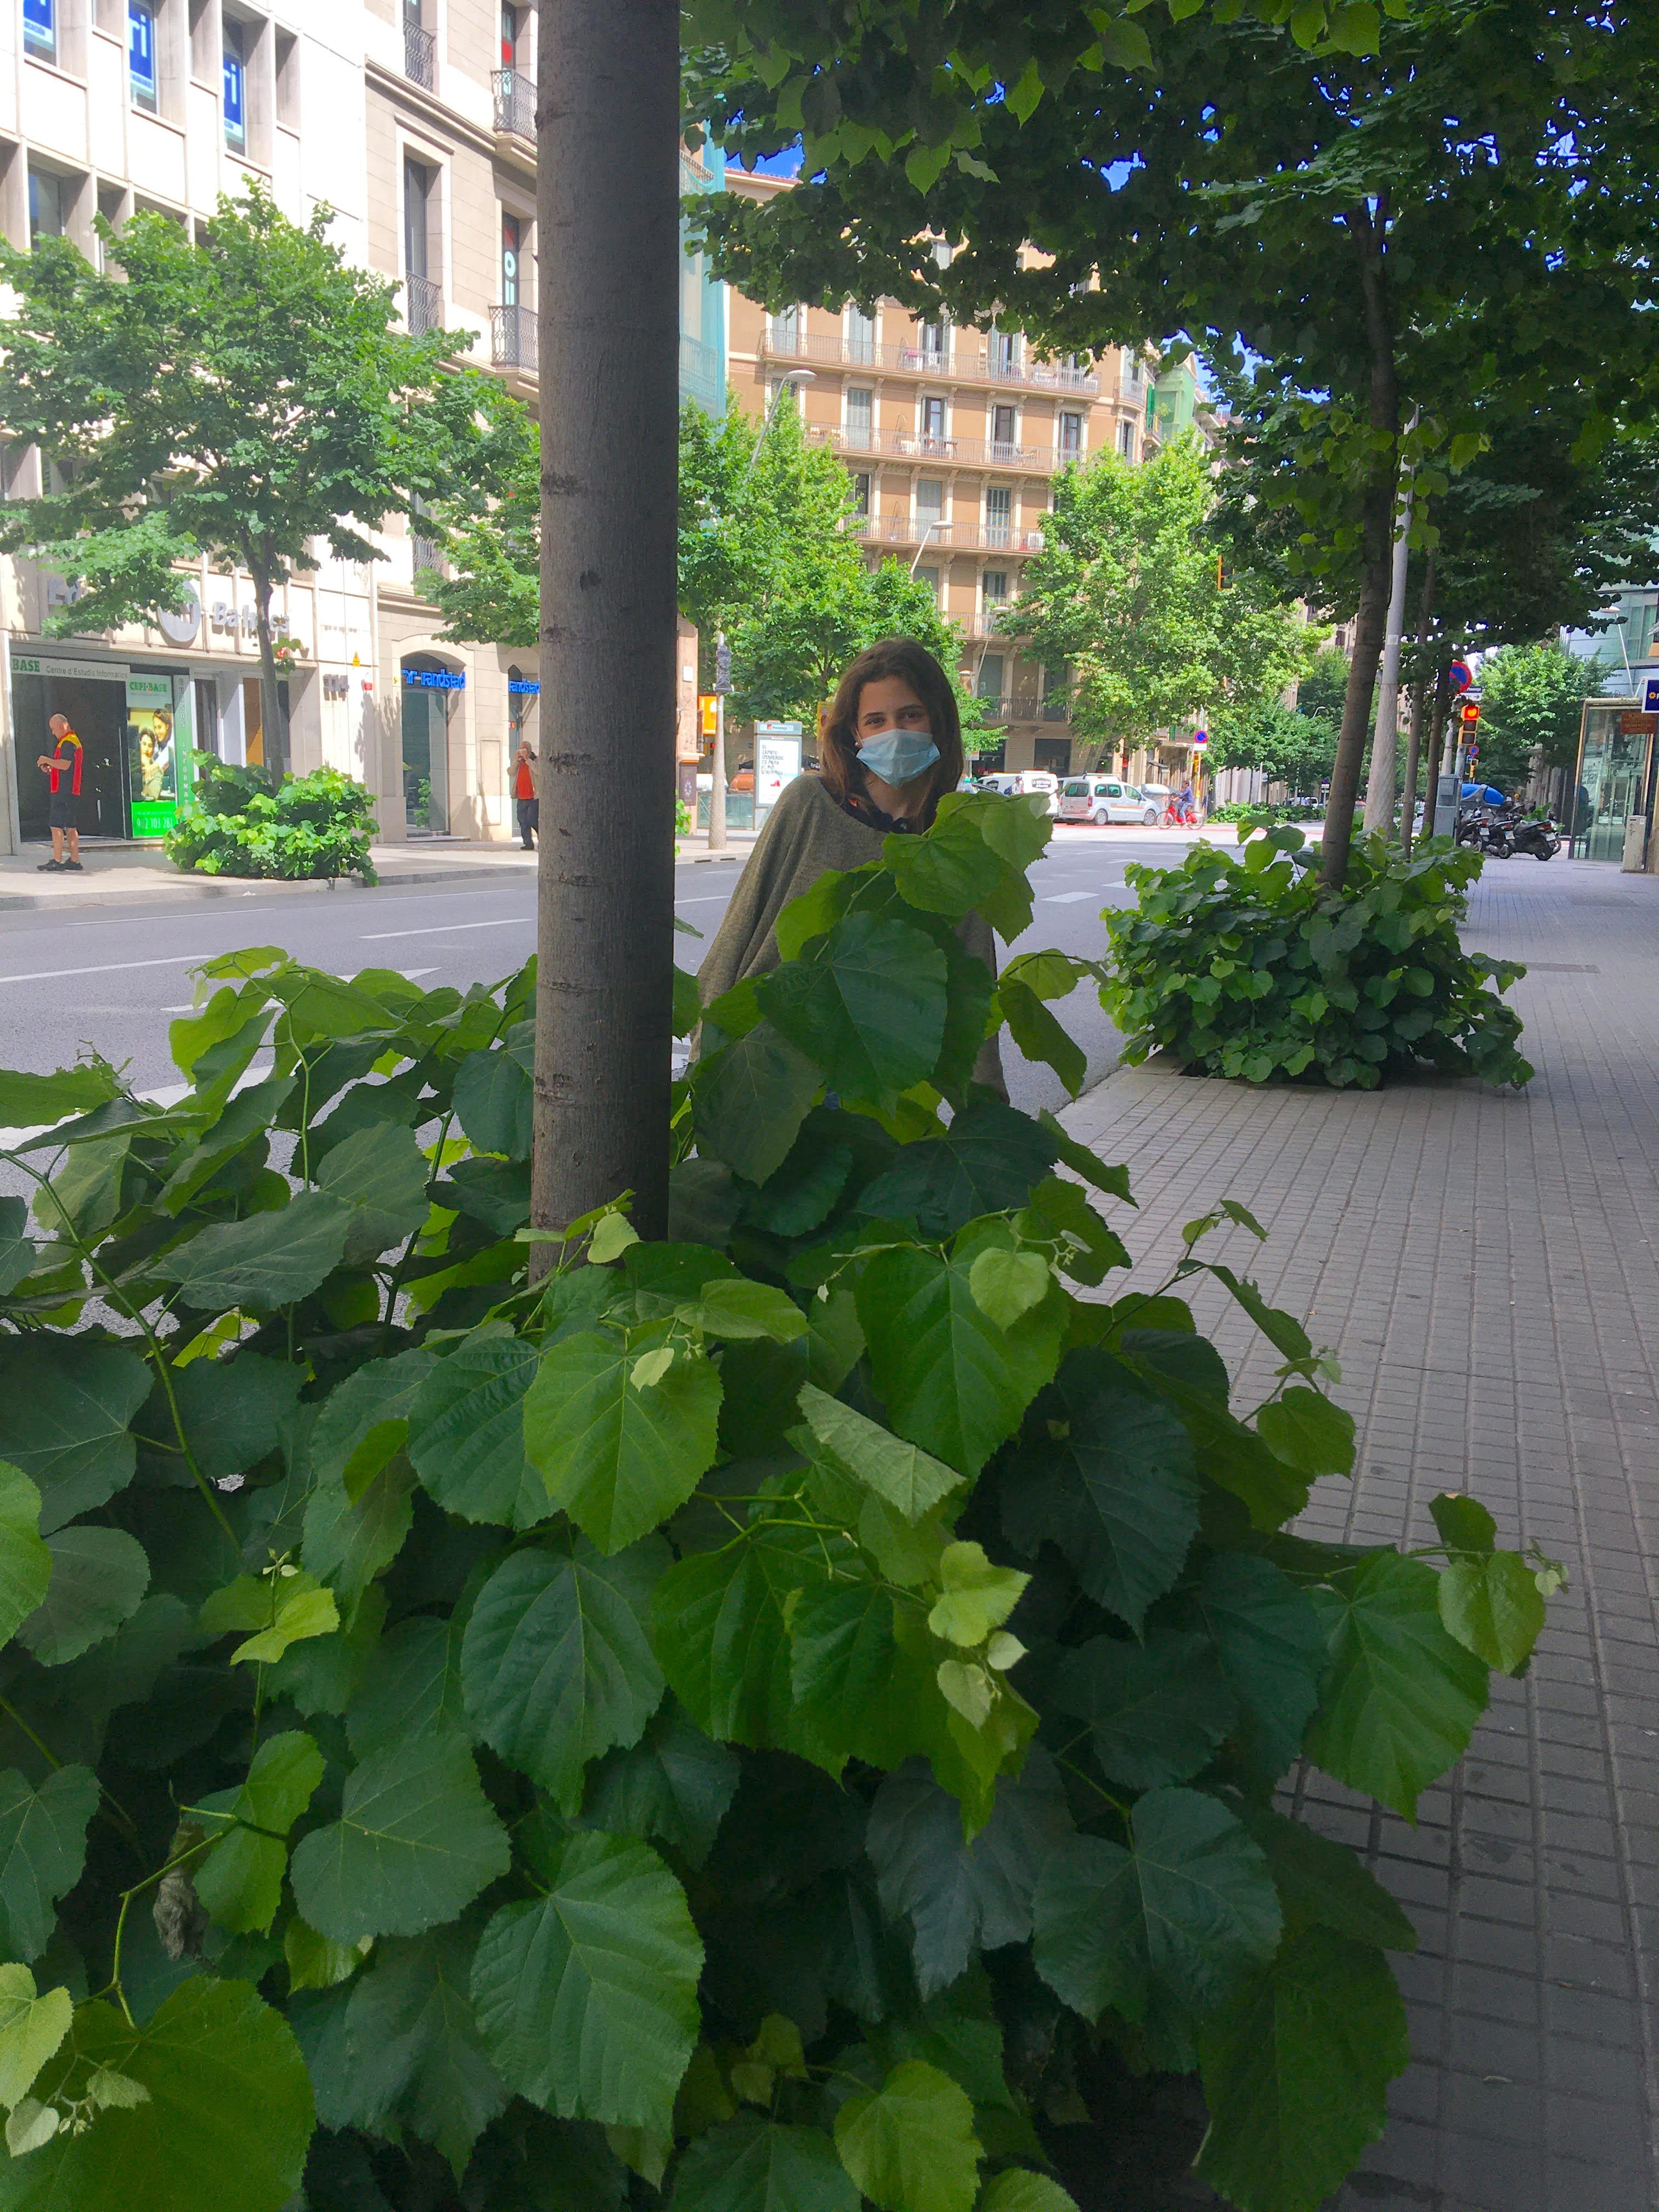 Barcelone : la ville des herbes folles